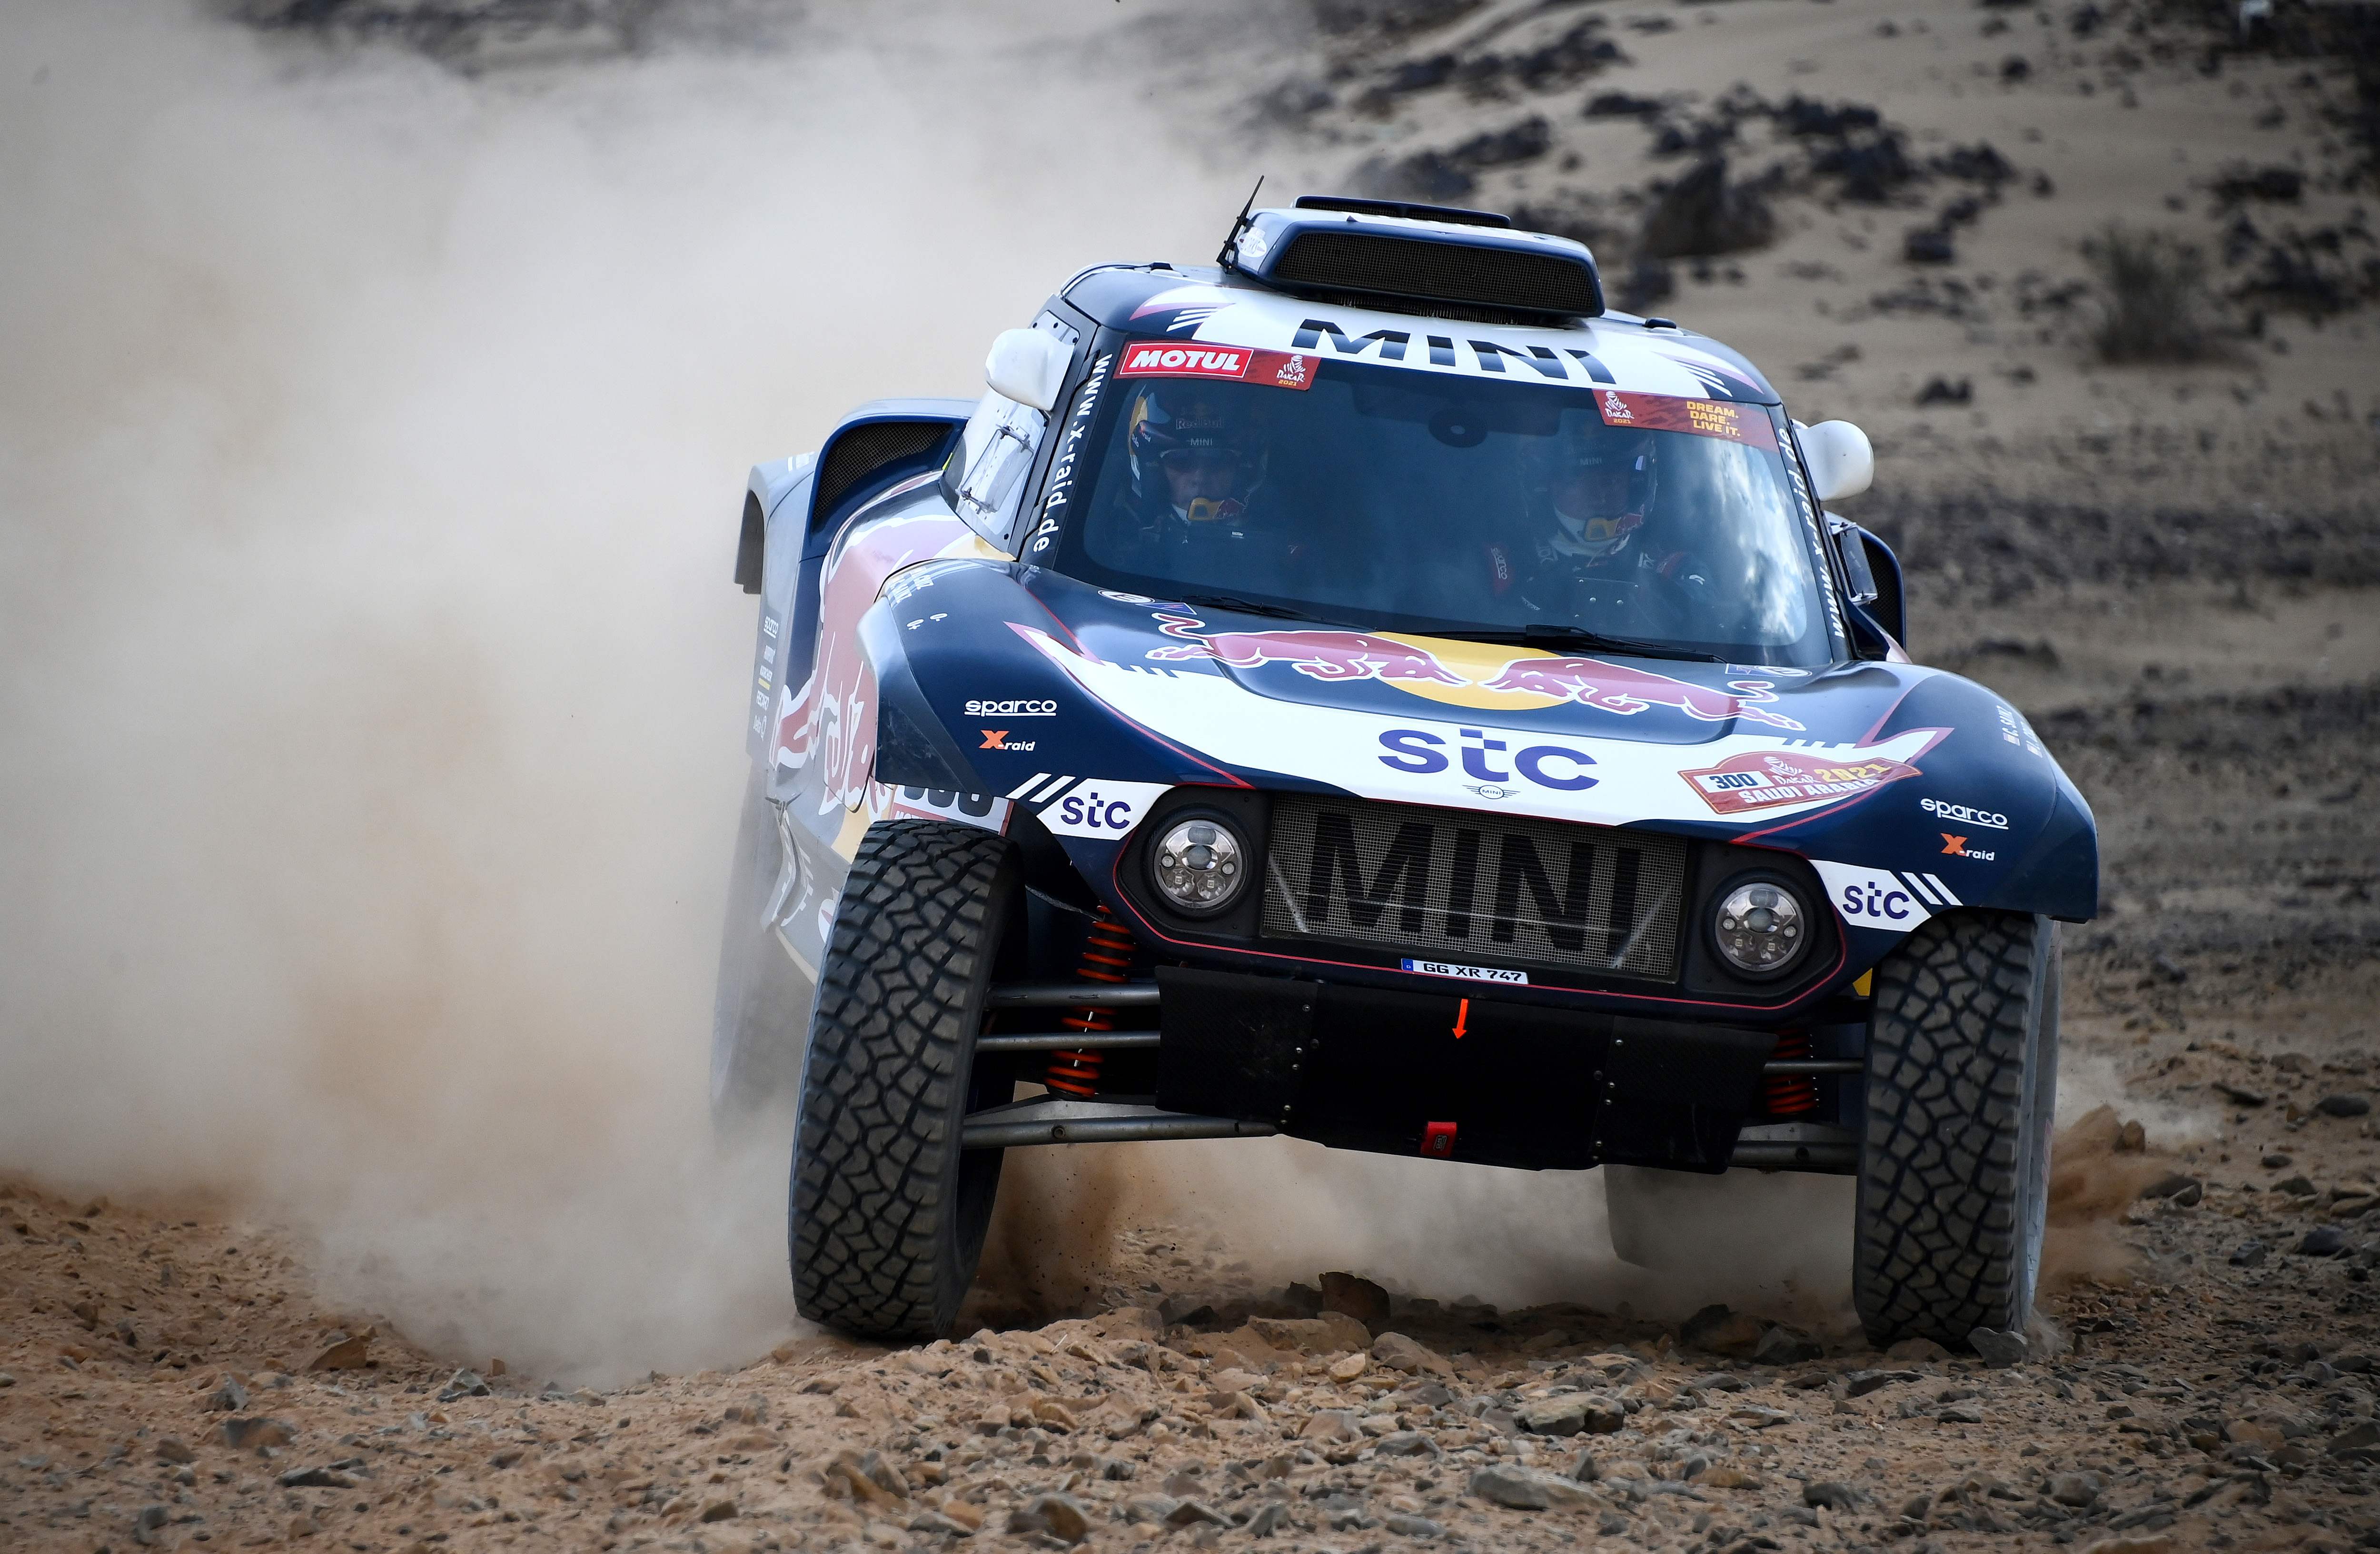 El piloto español Carlos Sainz es el campeón de la pasada edición del Rally Dakar y ocupa el primer puesto de la clasificación en el actual certamen. (Foto Prensa Libre: AFP)